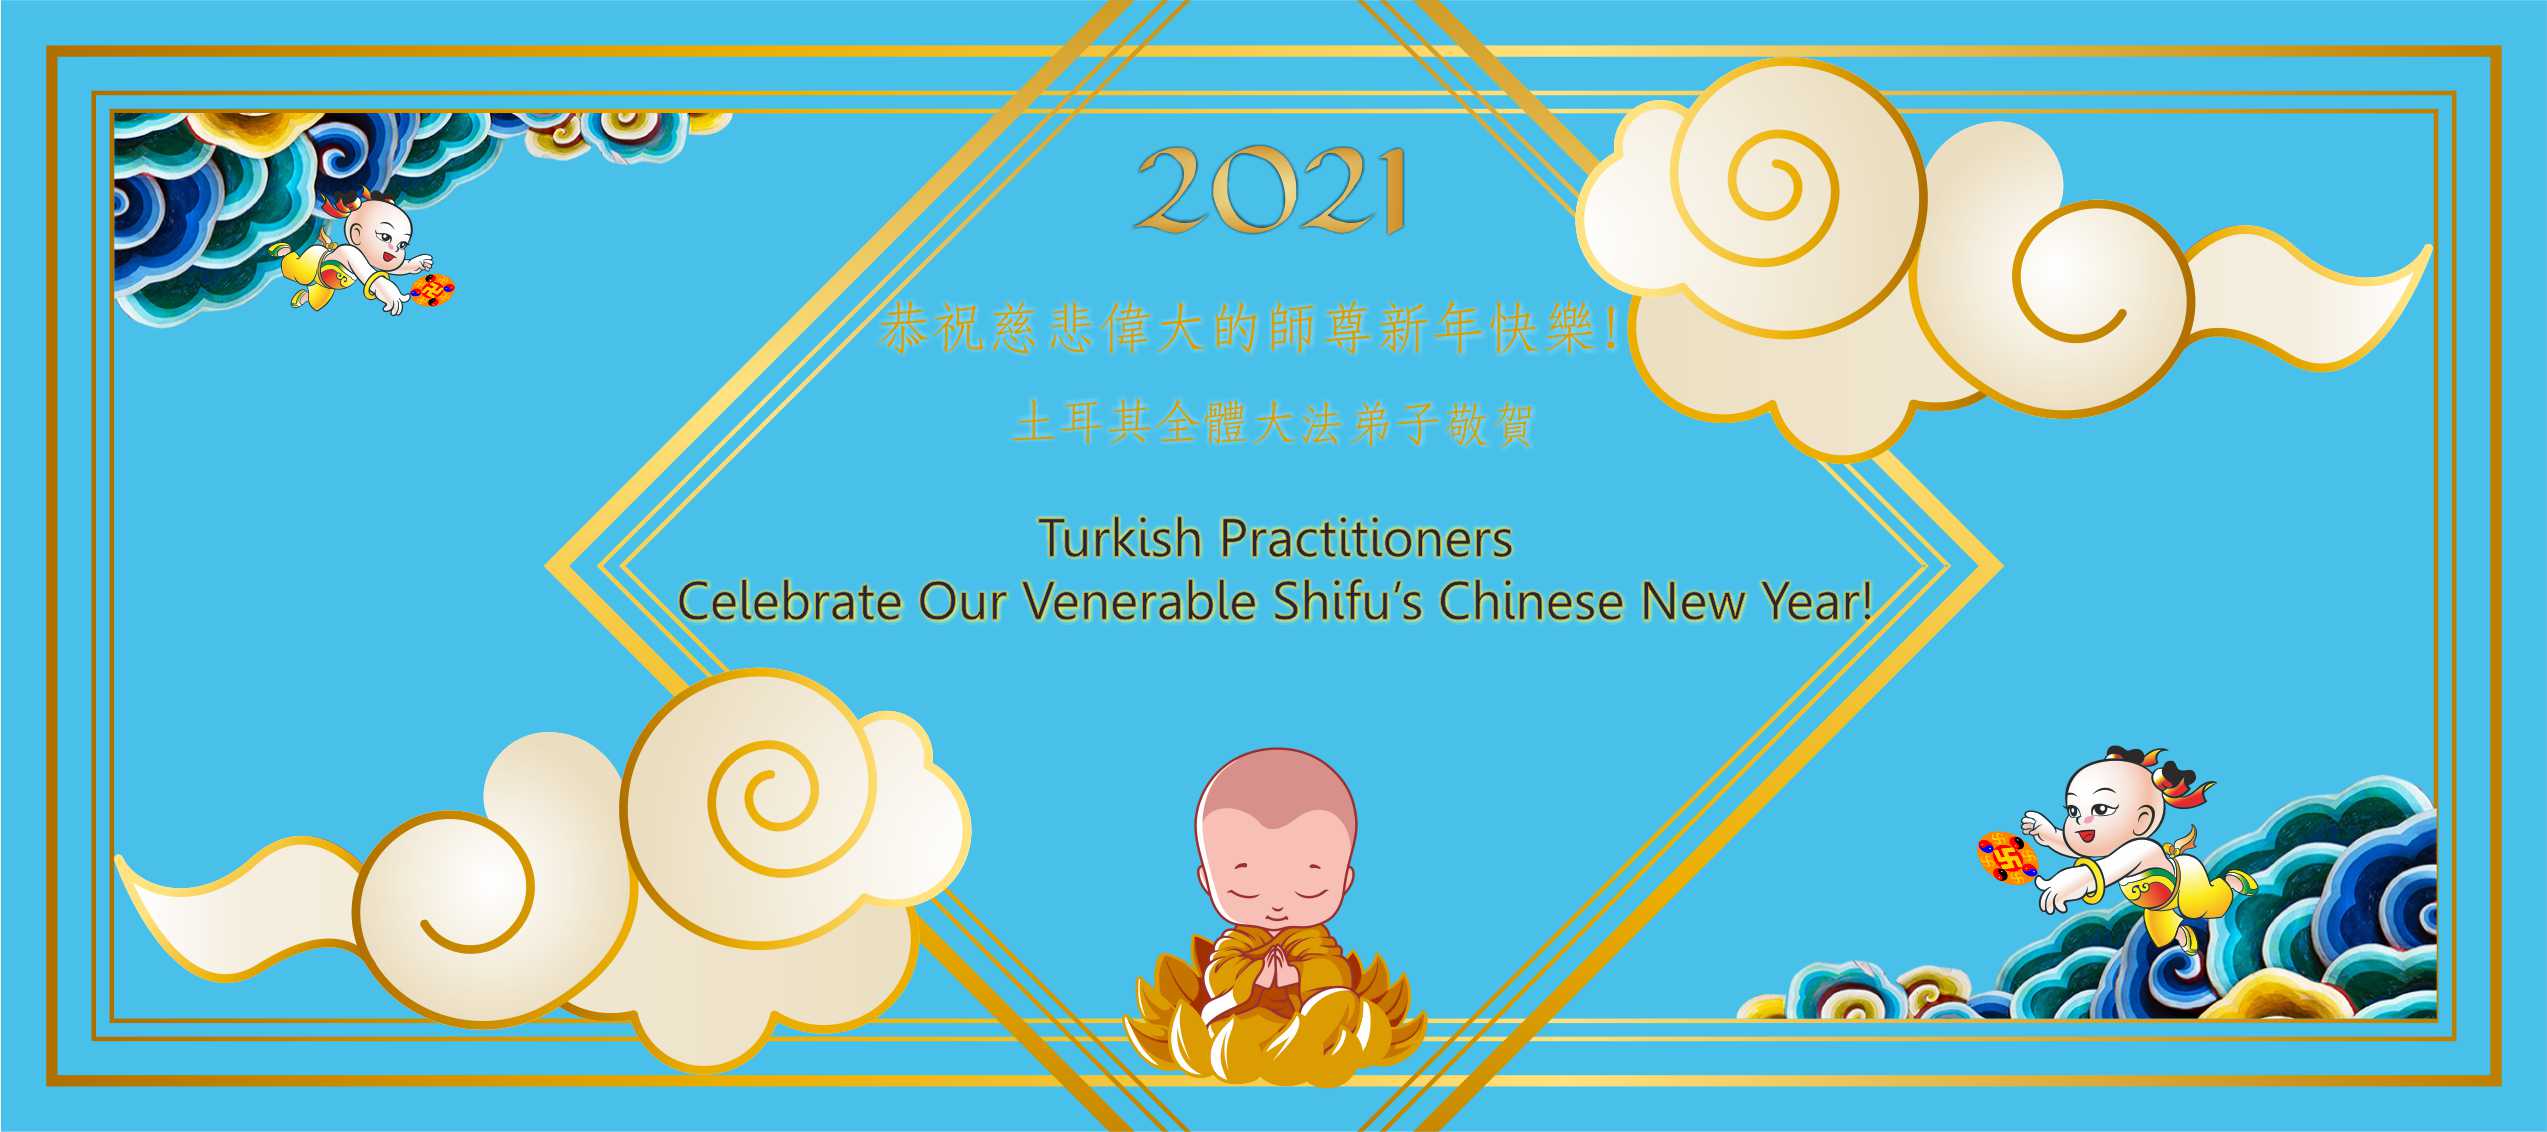 Image for article Türkiye'deki Dafa Uygulayıcıları Saygıdeğer Shifu'nun 2021 Çin Yeni Yılını Kutluyorlar!